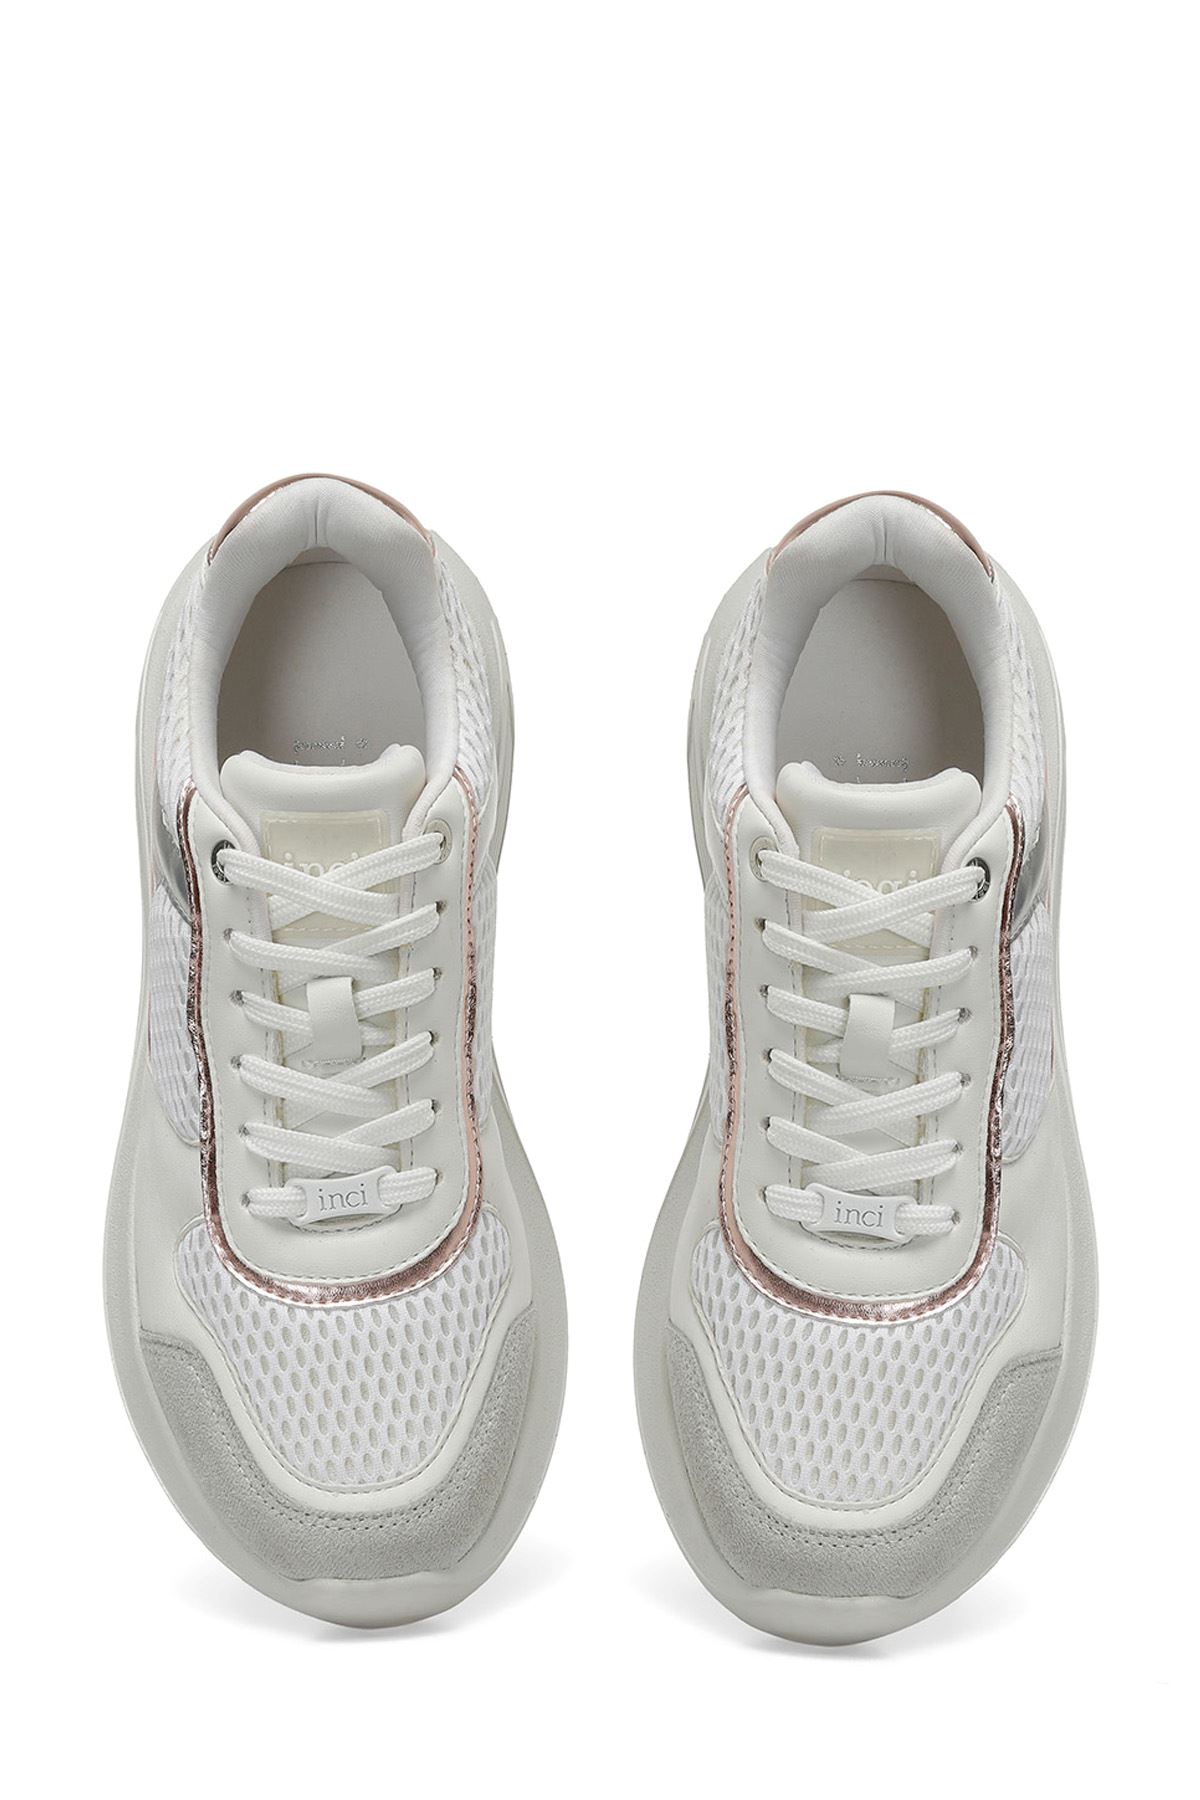 Sum 4Fx Incı Kadın Beyaz Spor Ayakkabı - 101545616